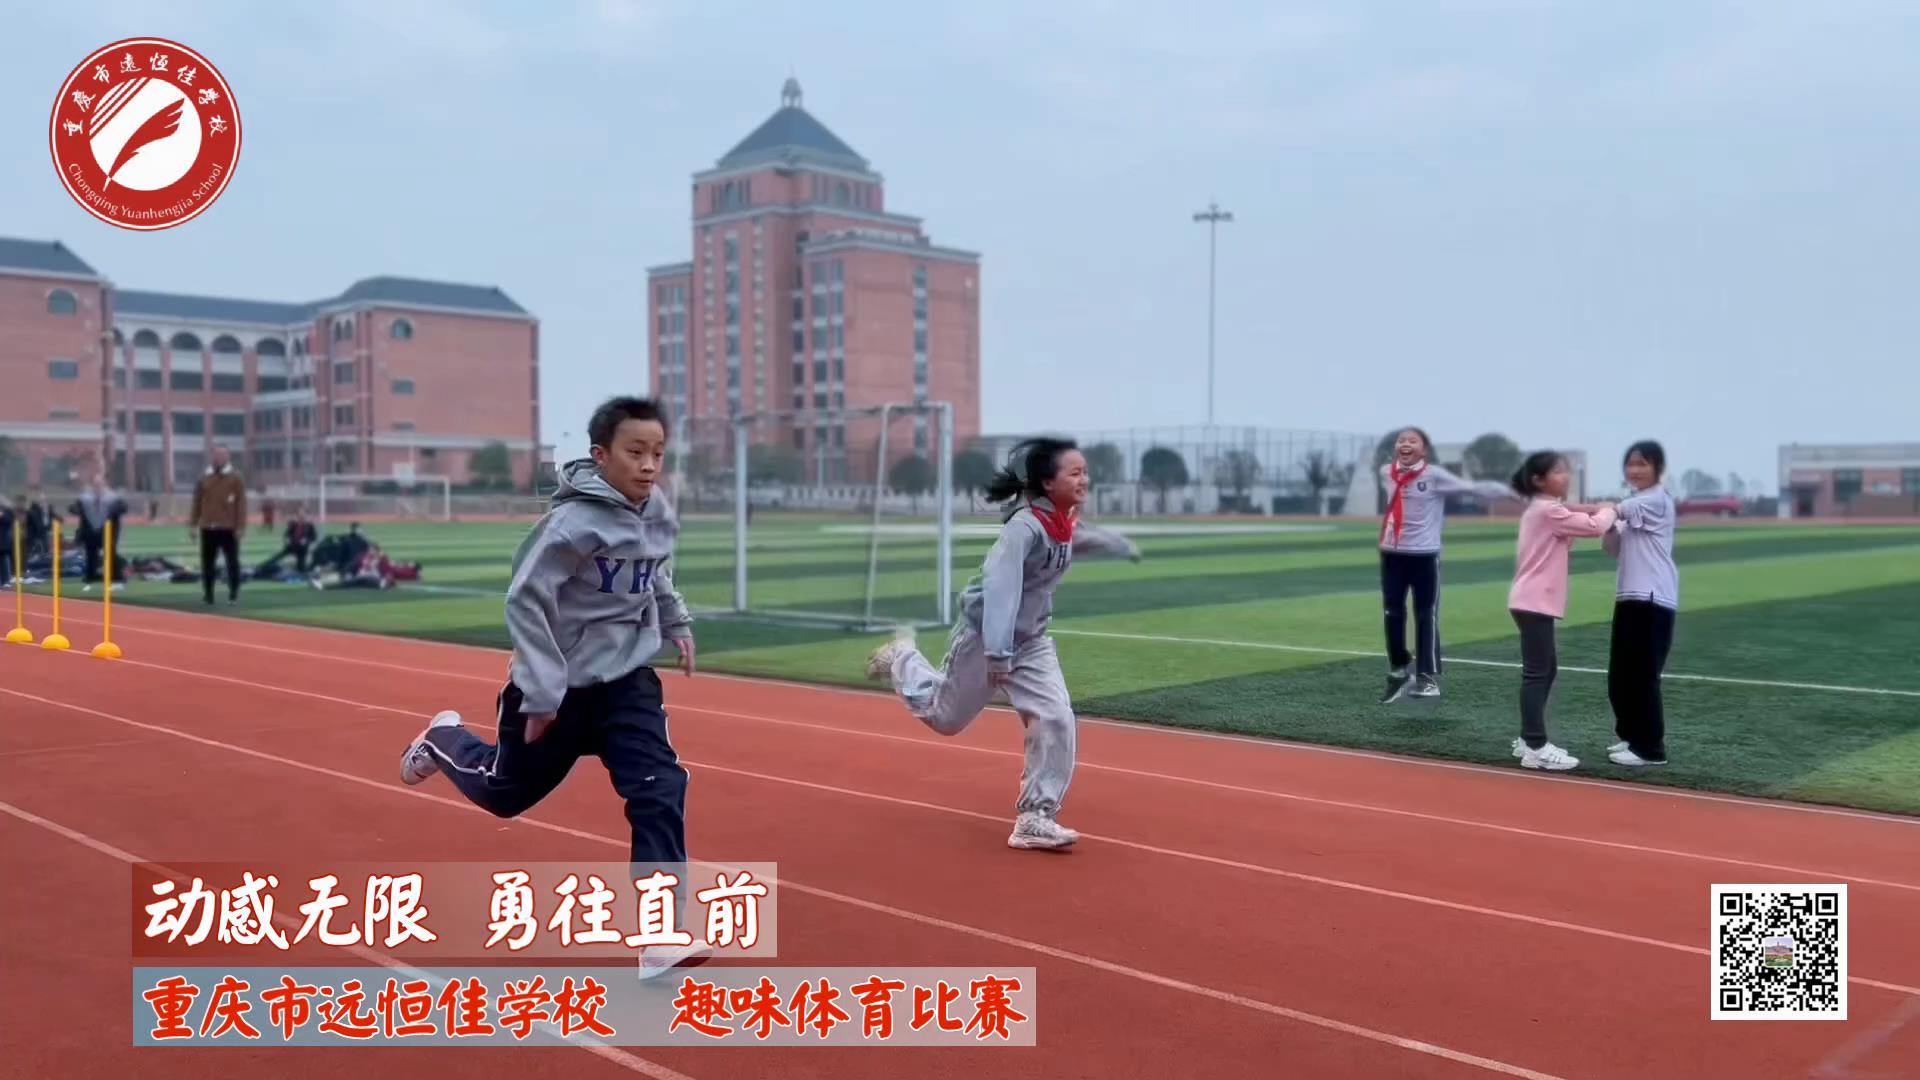 動感無限 勇往直前——重慶市遠恒佳學校小學部趣味運動會